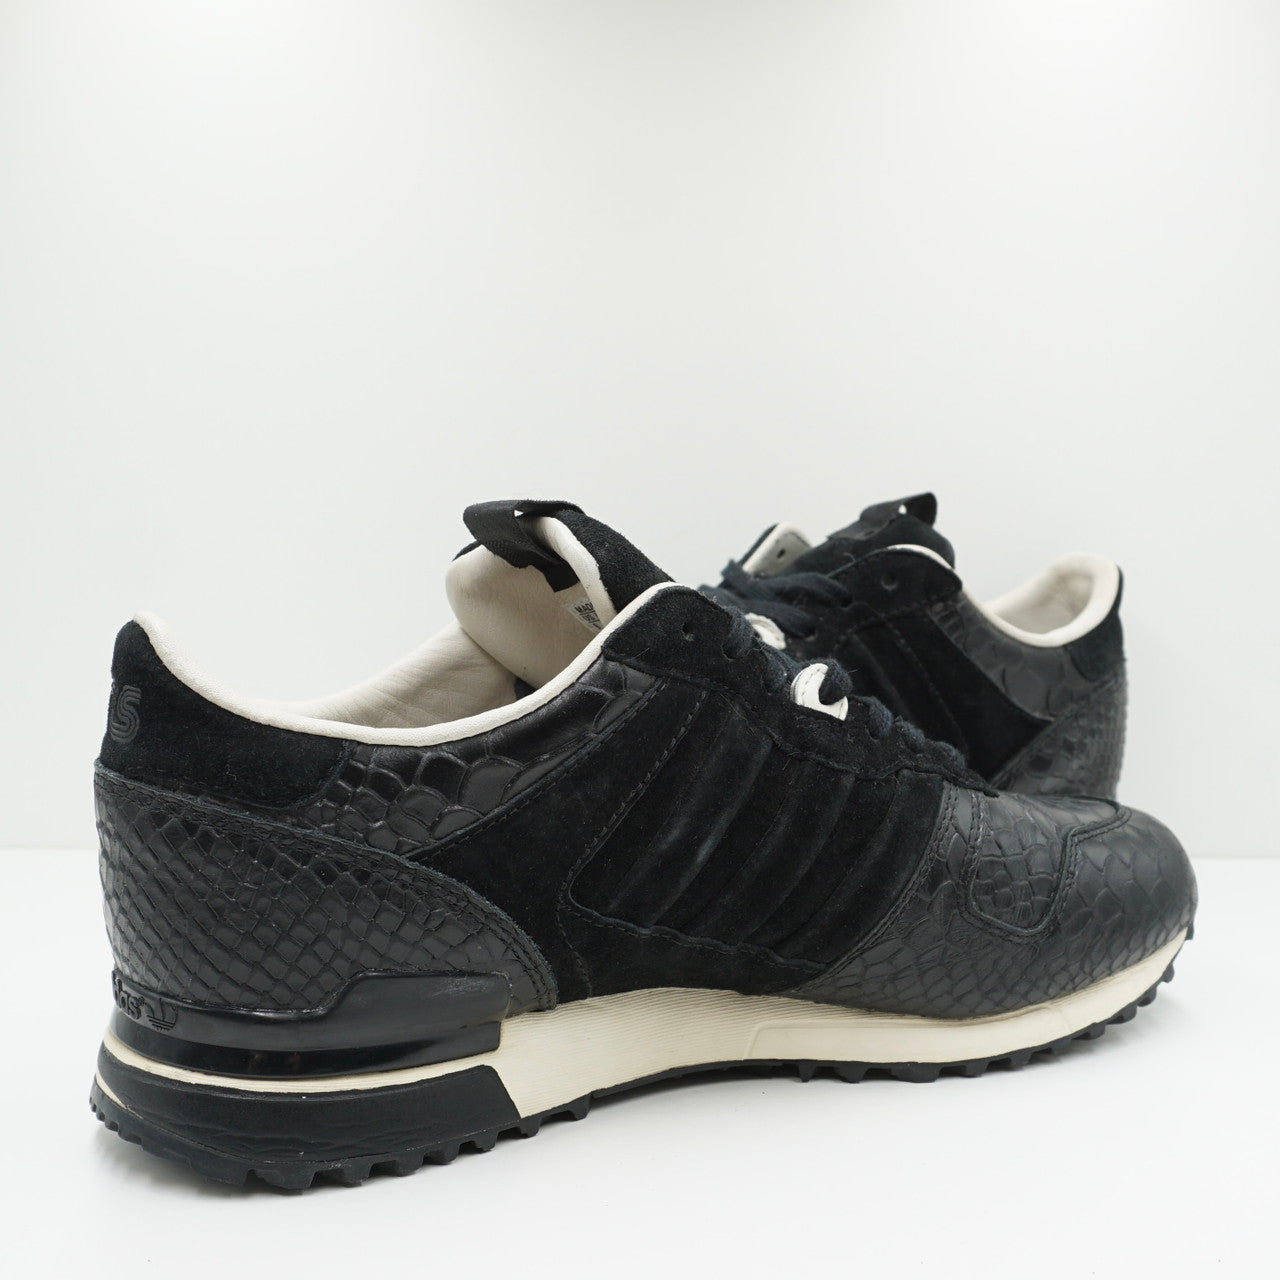 Adidas Consortium x Sneakersnstuff ZX 700 (W)